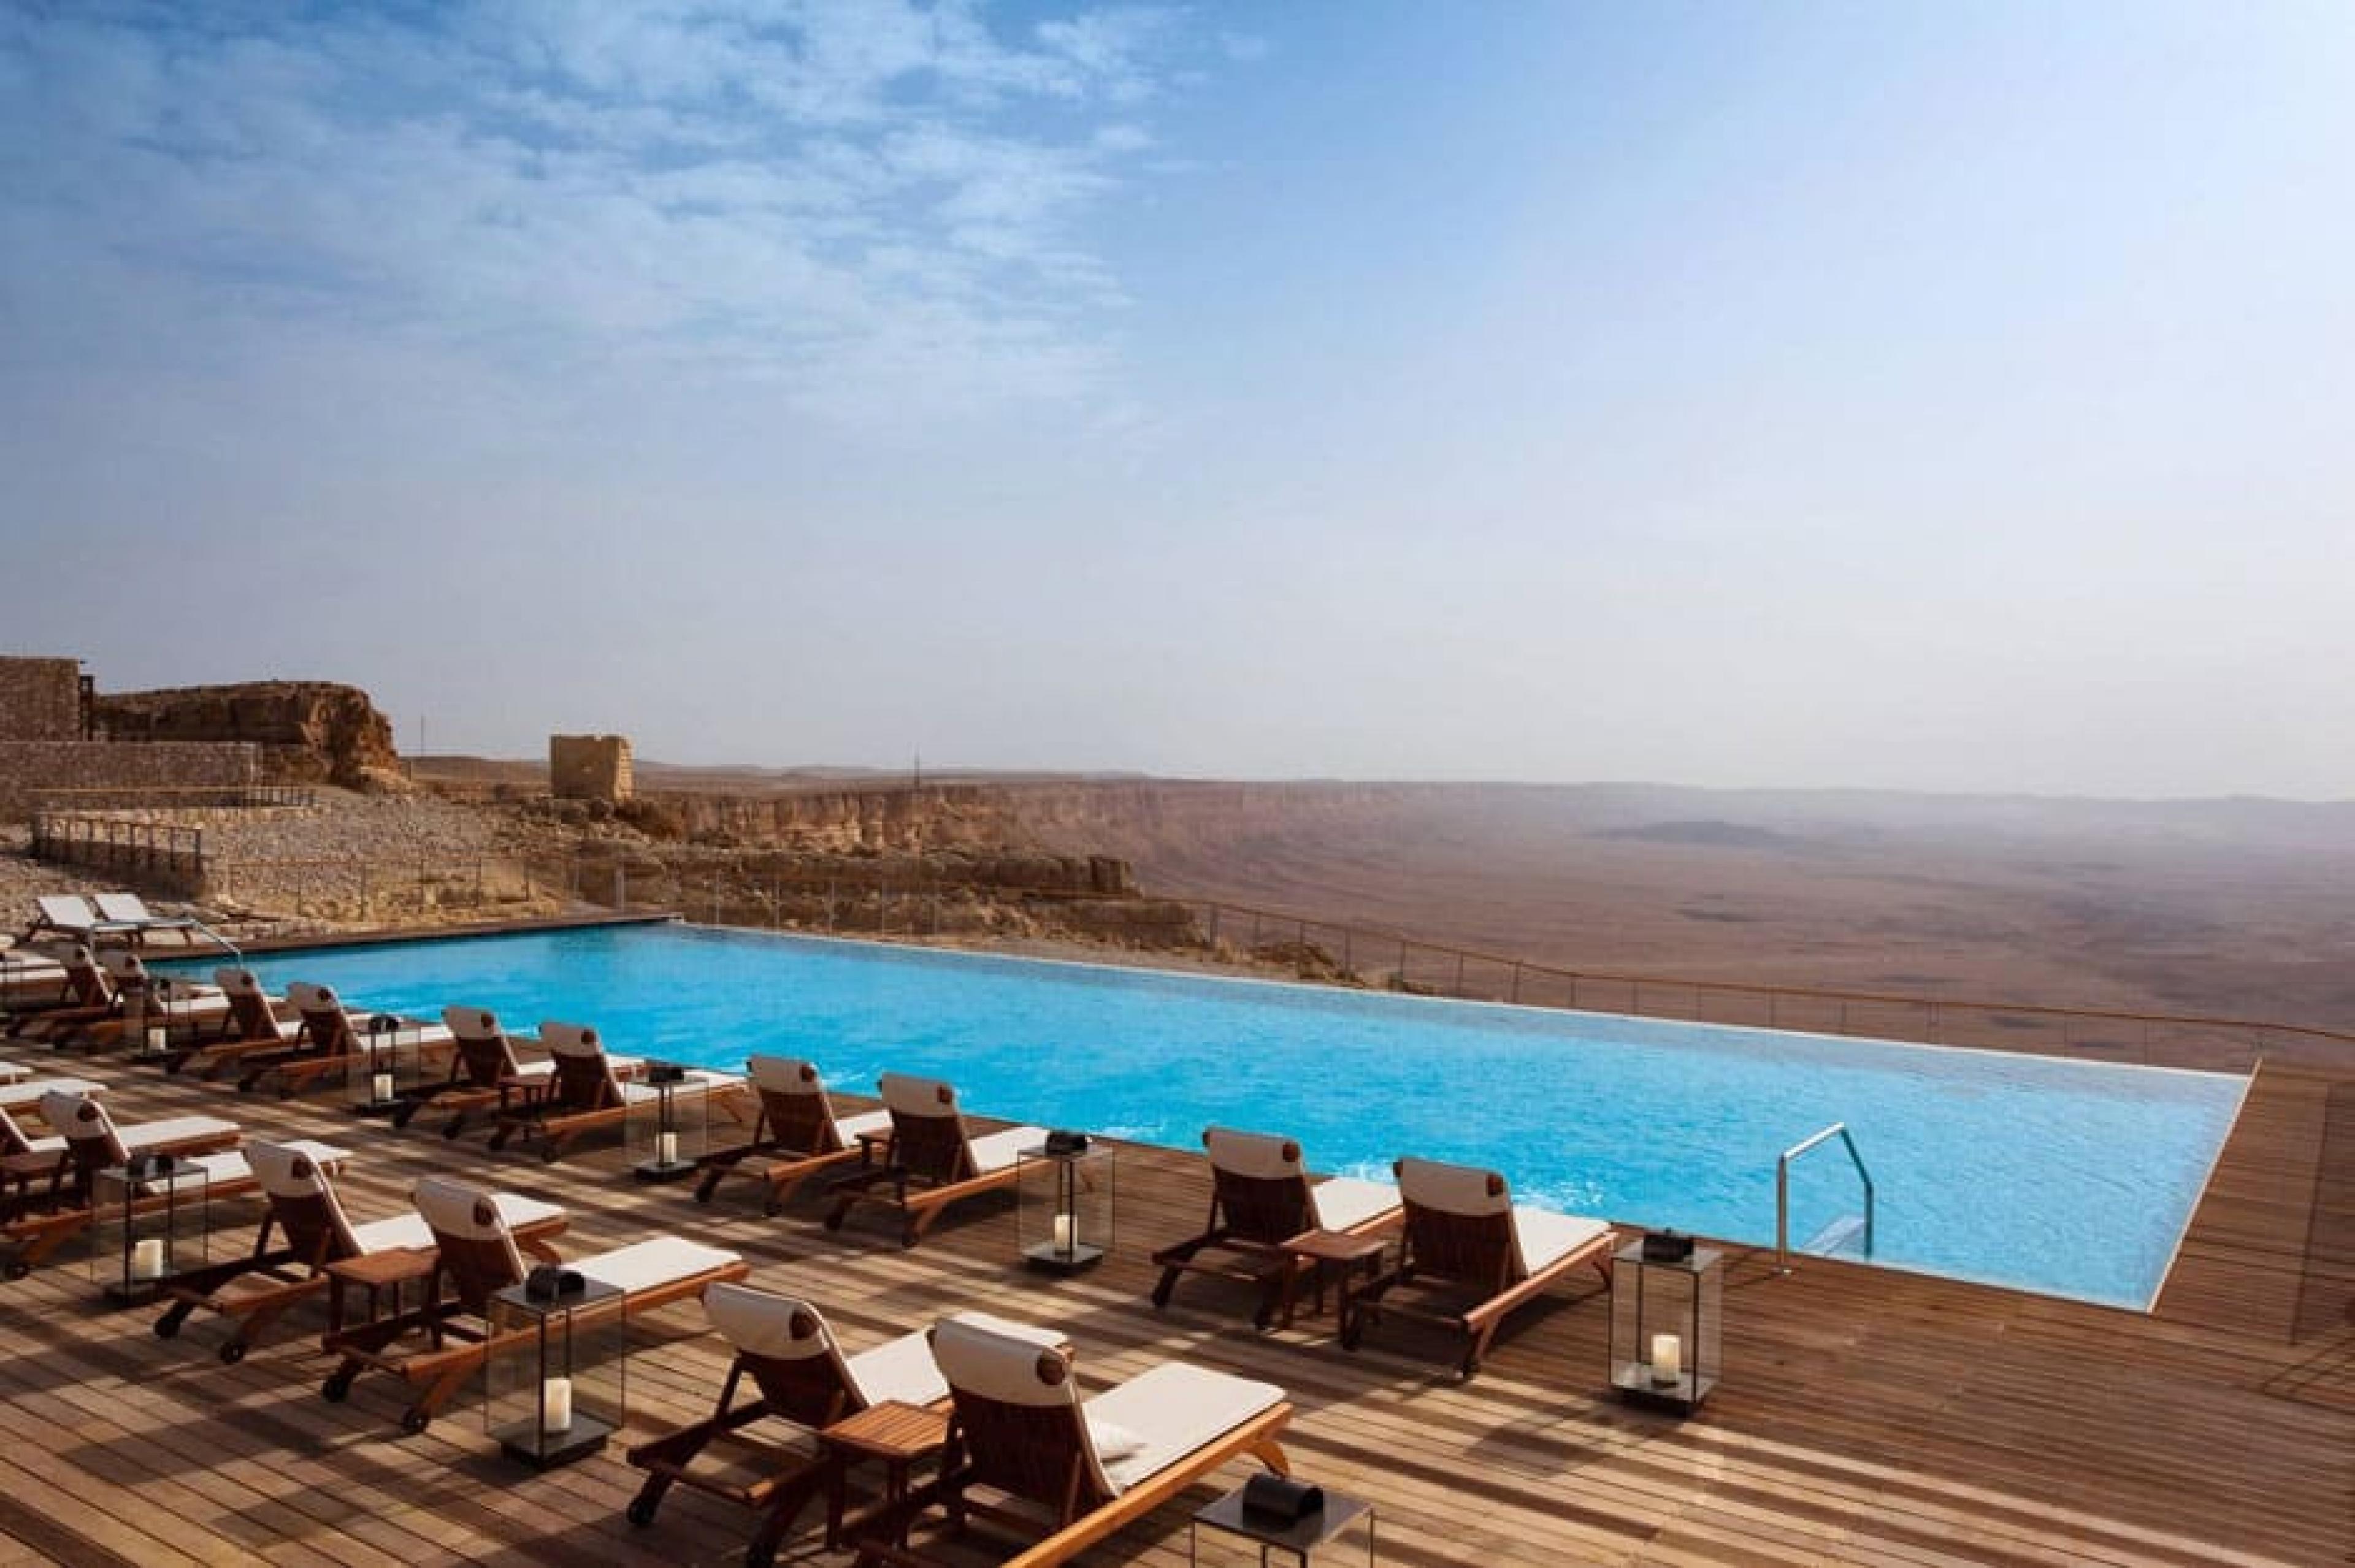 Pool Lounge at Beresheet Hotel, Israel